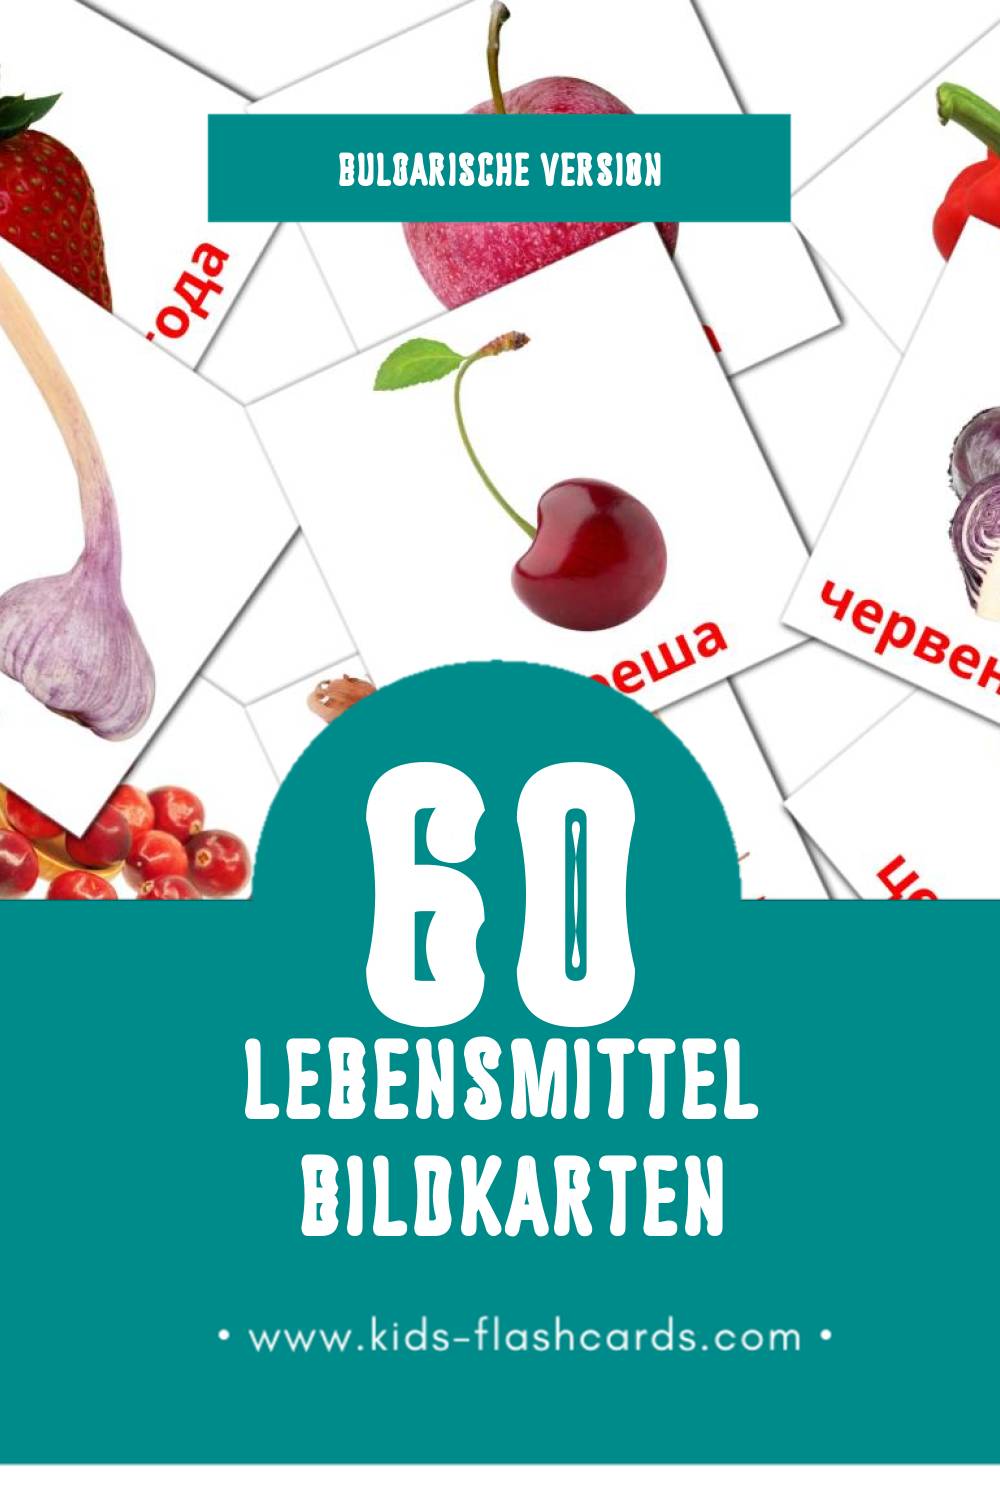 Visual Храна Flashcards für Kleinkinder (60 Karten in Bulgarisch)